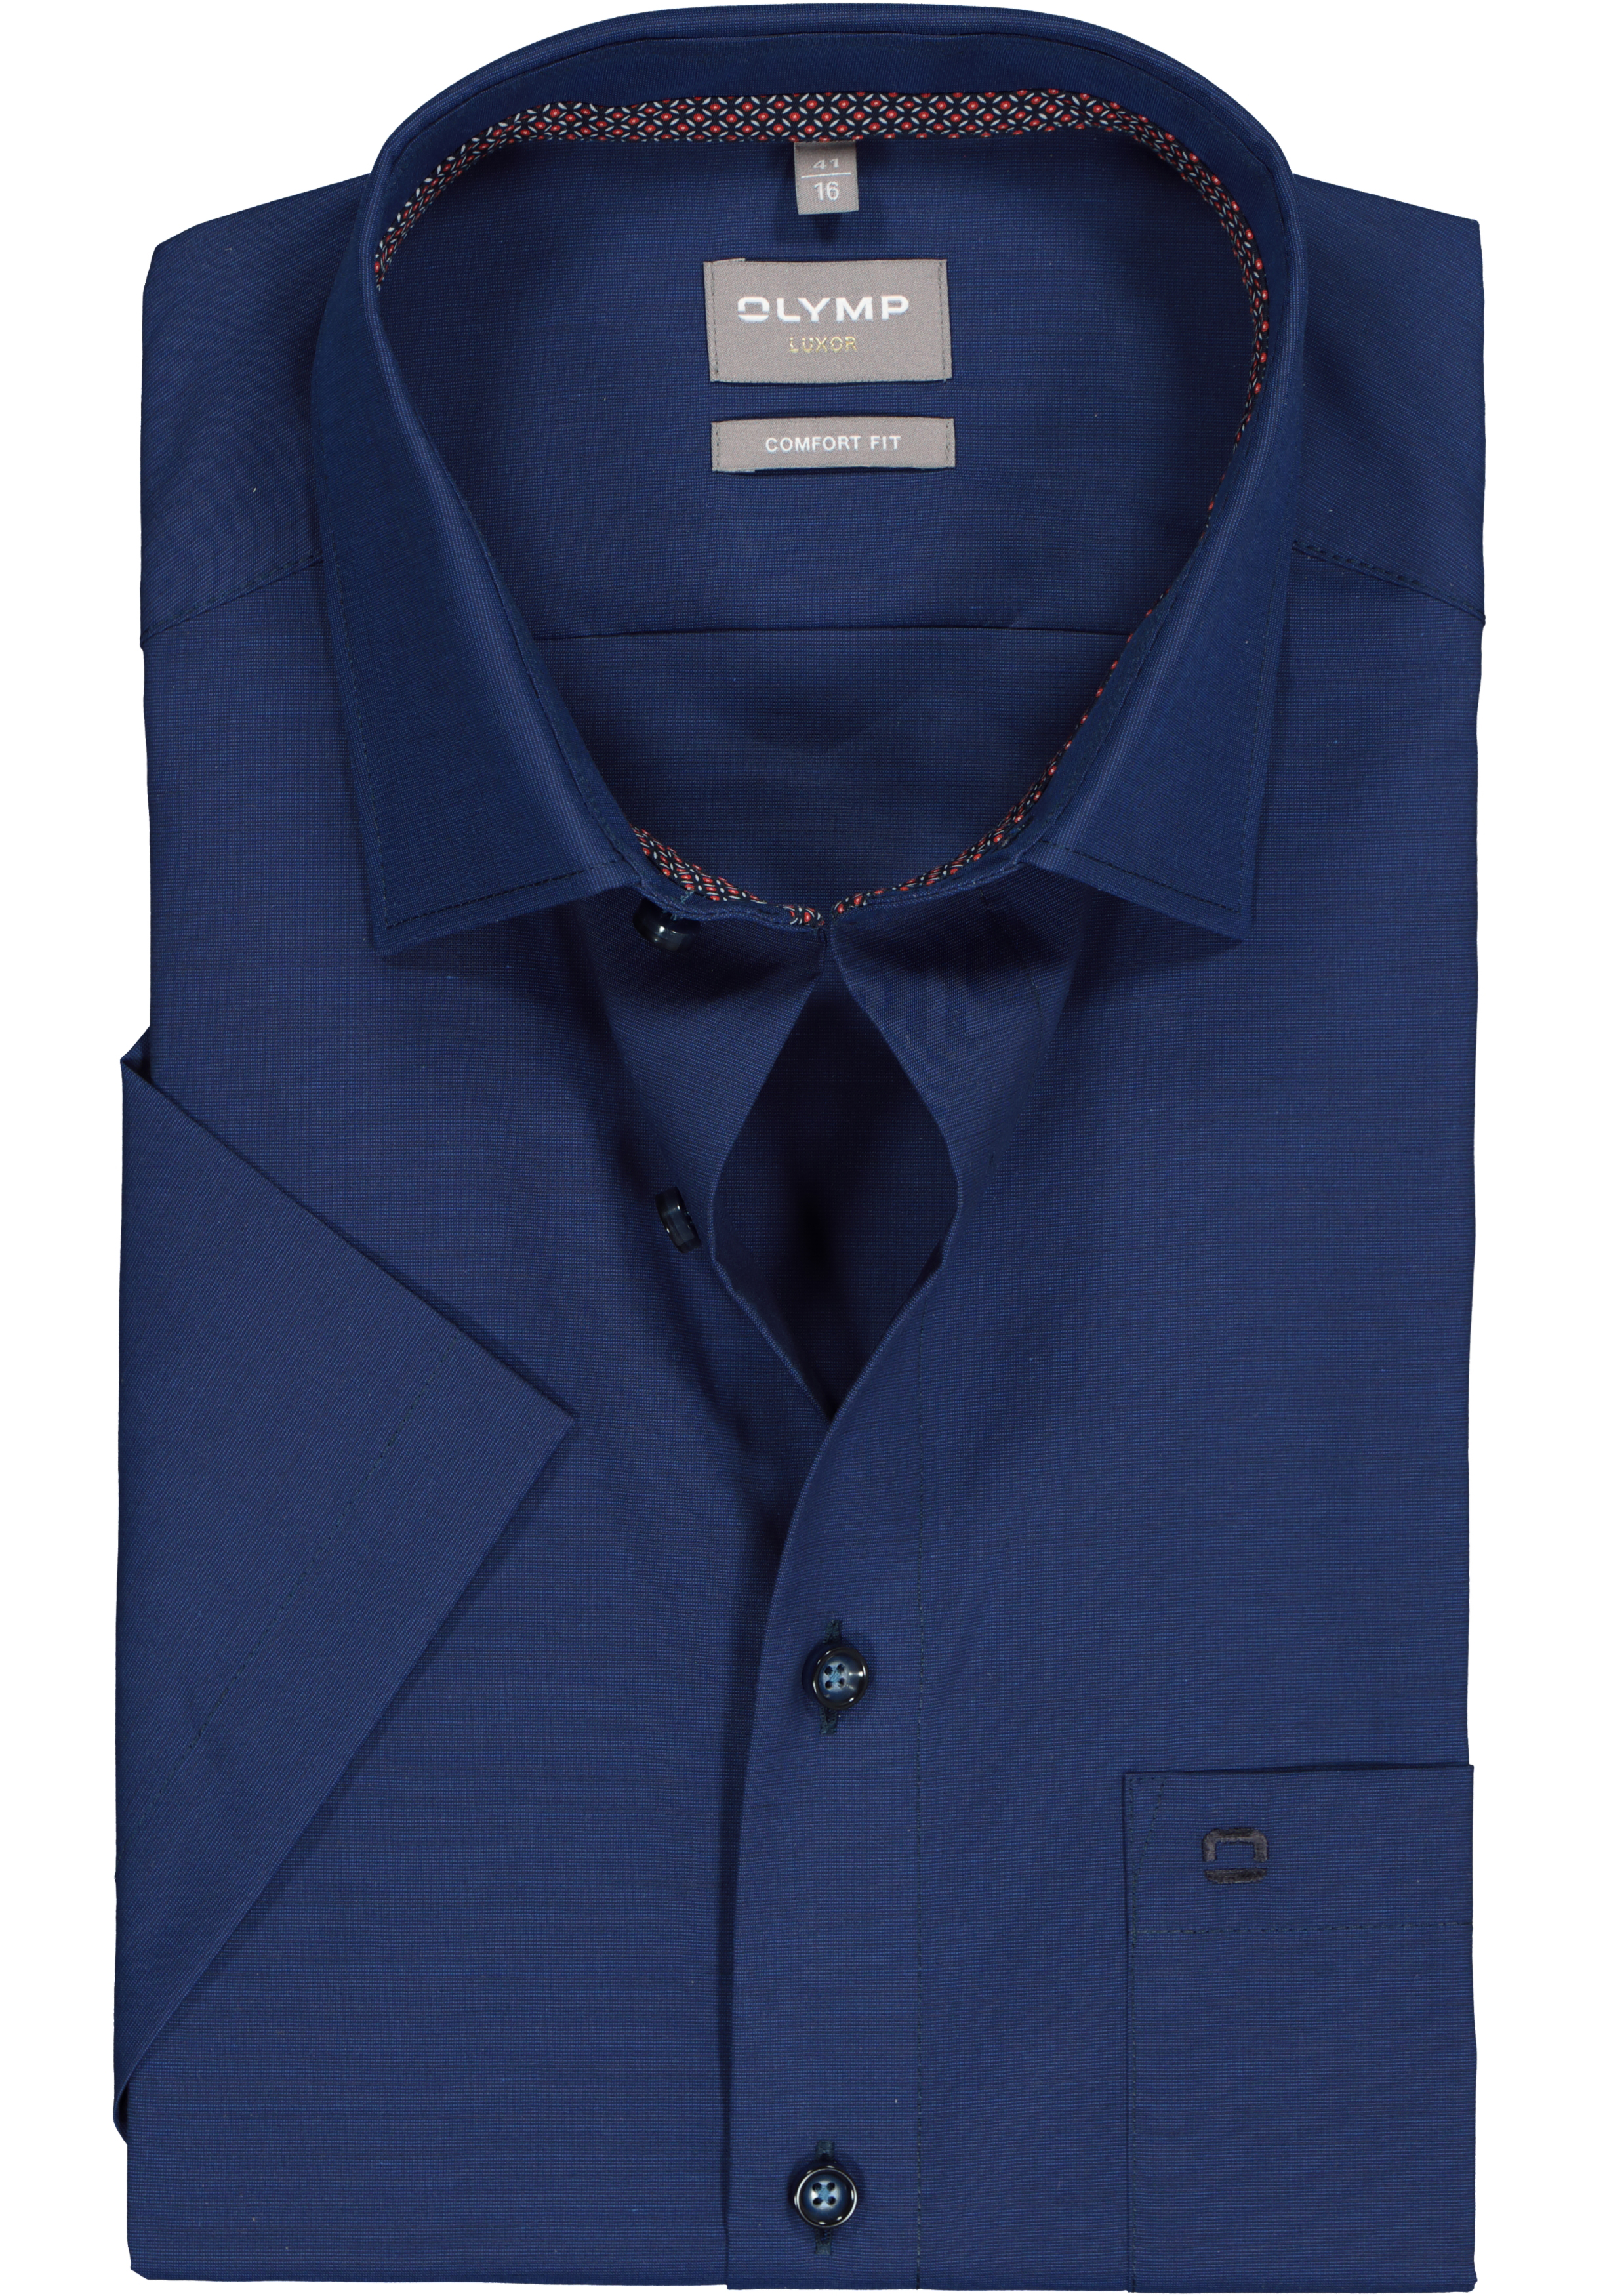 OLYMP comfort fit overhemd, korte mouw, structuur, nachtblauw (contrast)